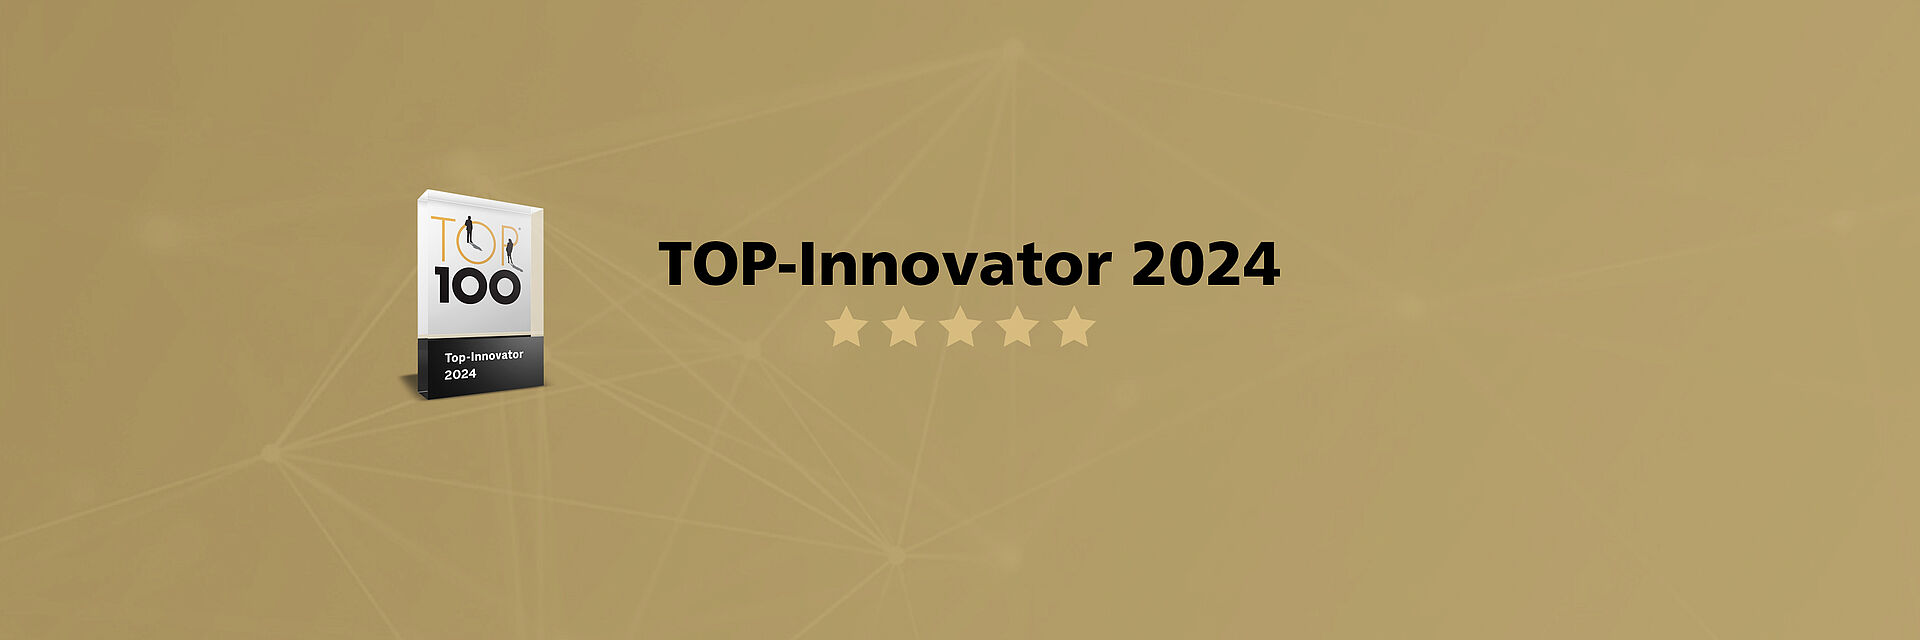 FAULHABER TOP100 Award 2024 - Header (English)